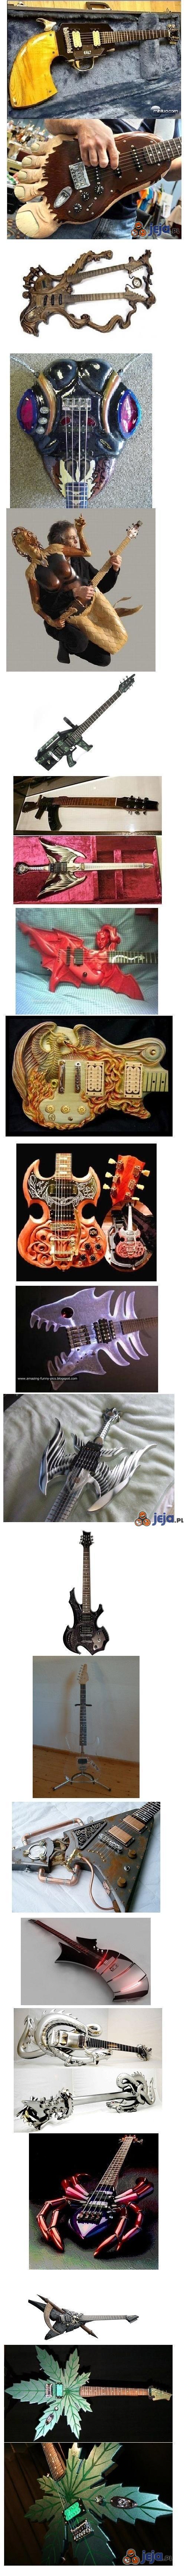 Pomysłowo ozdobione gitary